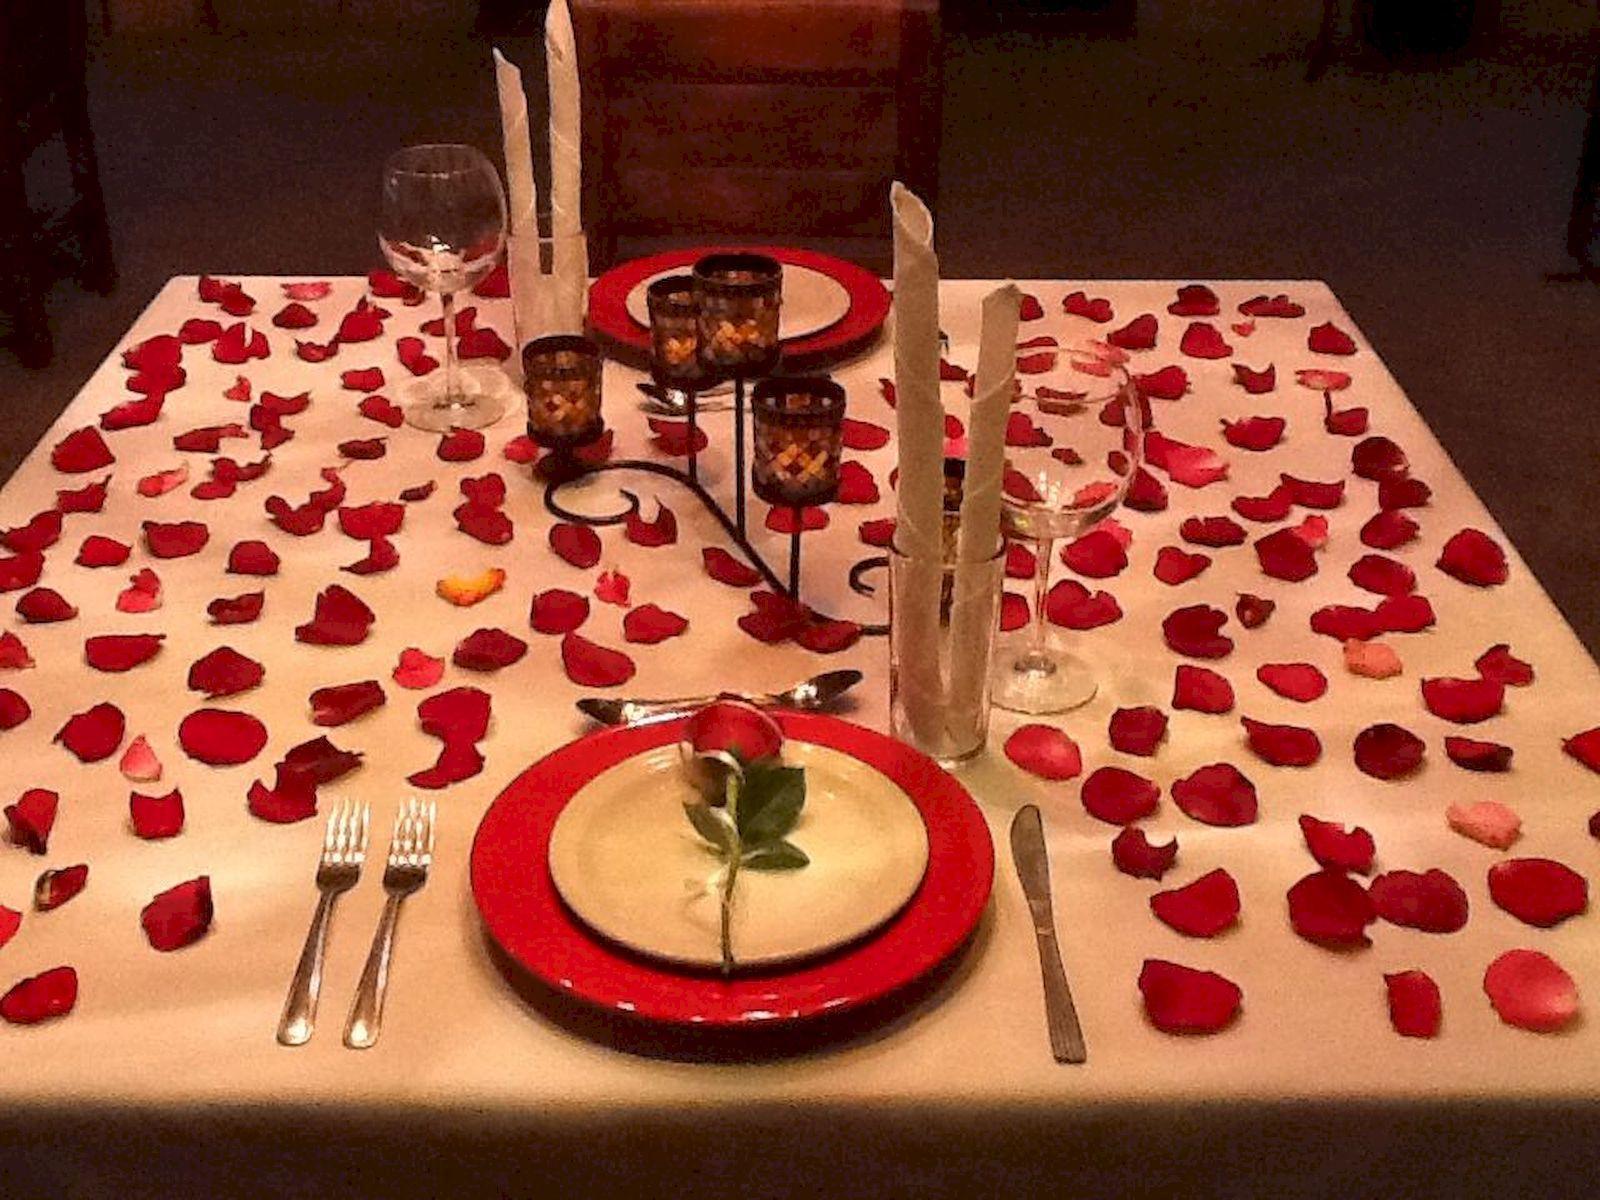 Что приготовить на романтический ужин для двоих: рецепты  | lifeforjoy